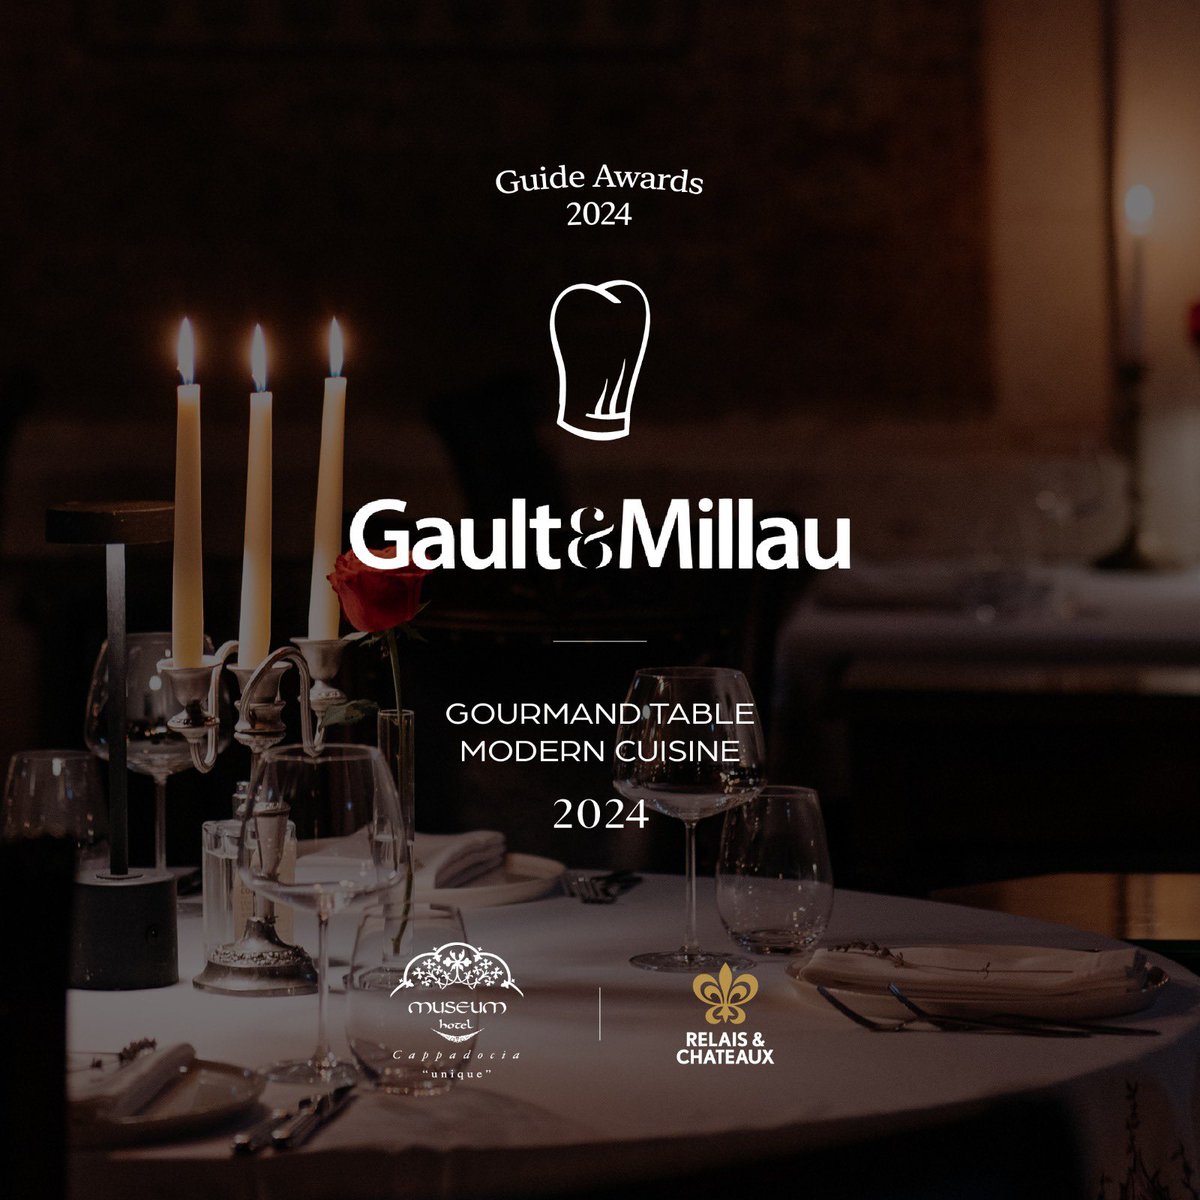 Dünyaca ünlü gastronomi rehberi Gault & Millau'nun Türkiye'deki ilk senesinde ödül almış olmaktan büyük mutluluk duyuyoruz.

#museumhotel #relaischateaux #muzeotel #gaultmillau #kapadokya